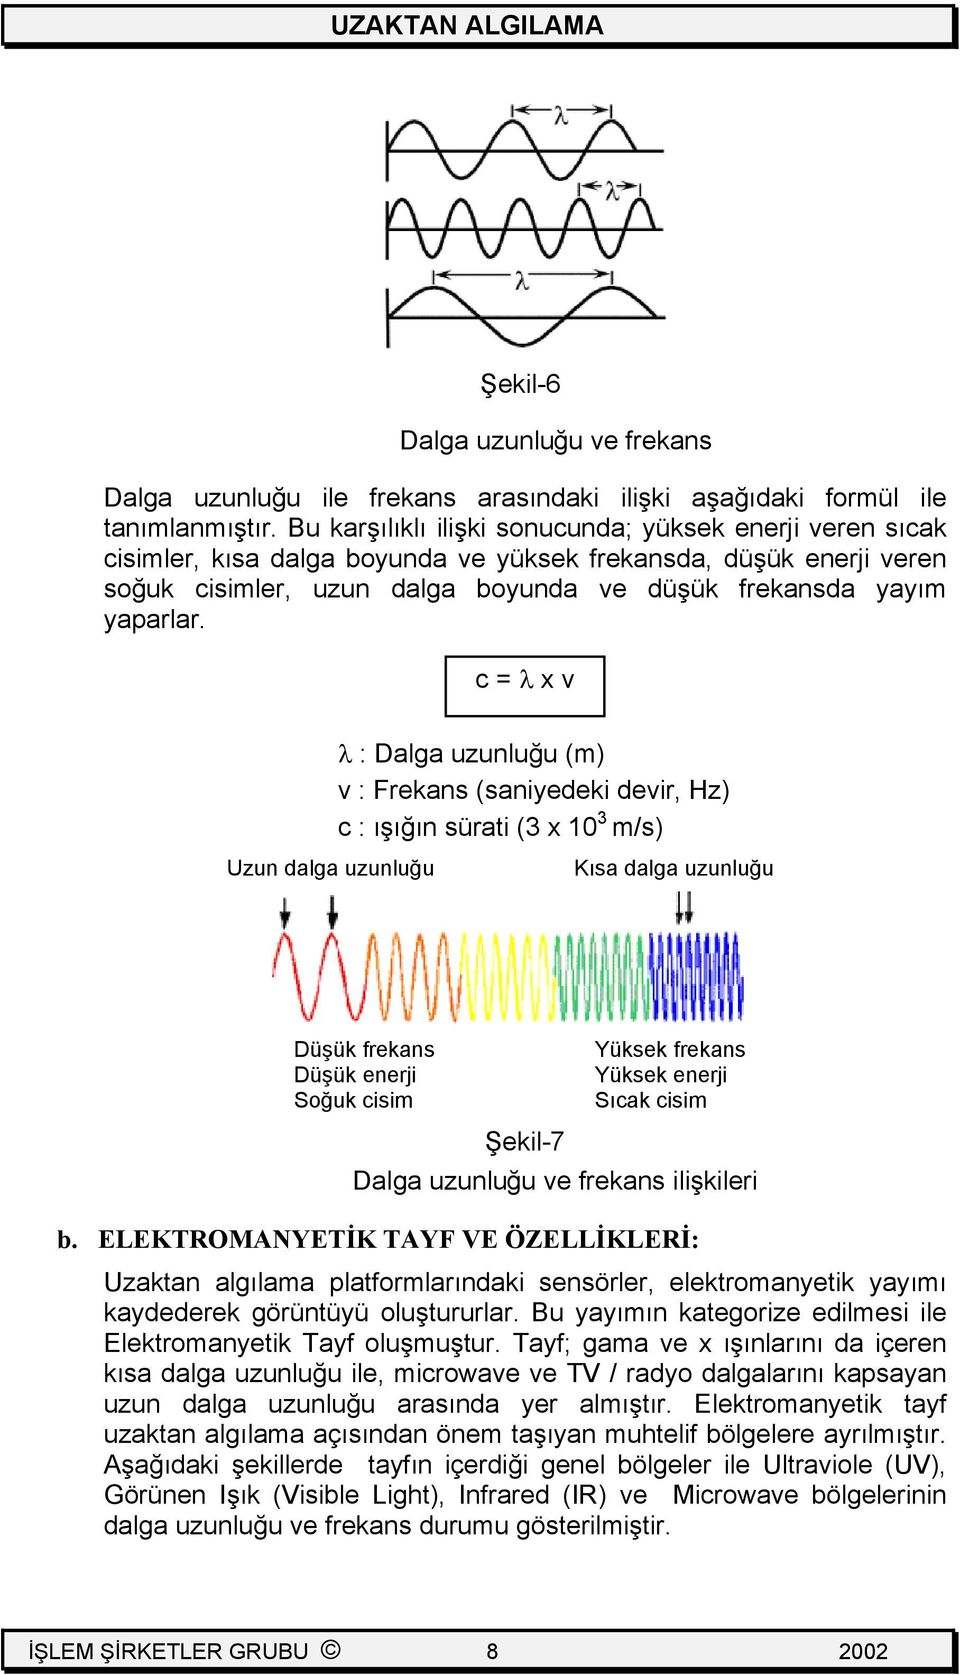 c = λ x v Uzun dalga uzunluğu λ : Dalga uzunluğu (m) v : Frekans (saniyedeki devir, Hz) c : ışığın sürati (3 x 10 3 m/s) Kısa dalga uzunluğu Düşük frekans Düşük enerji Soğuk cisim Şekil-7 Yüksek